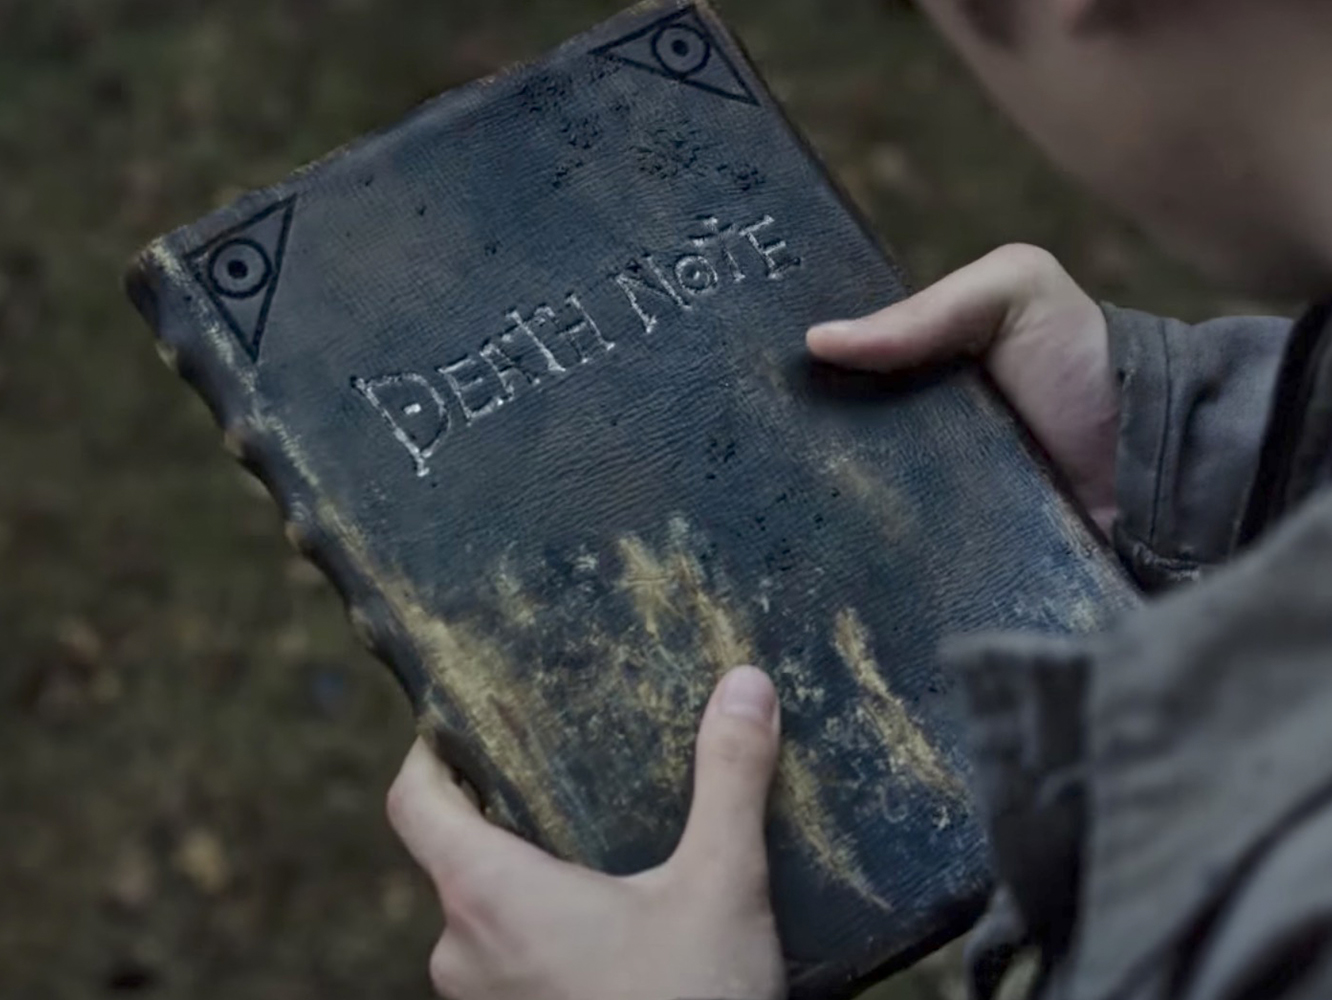  Netflix estrena el tráiler de ‘Death Note’, bastante mejor de lo esperado